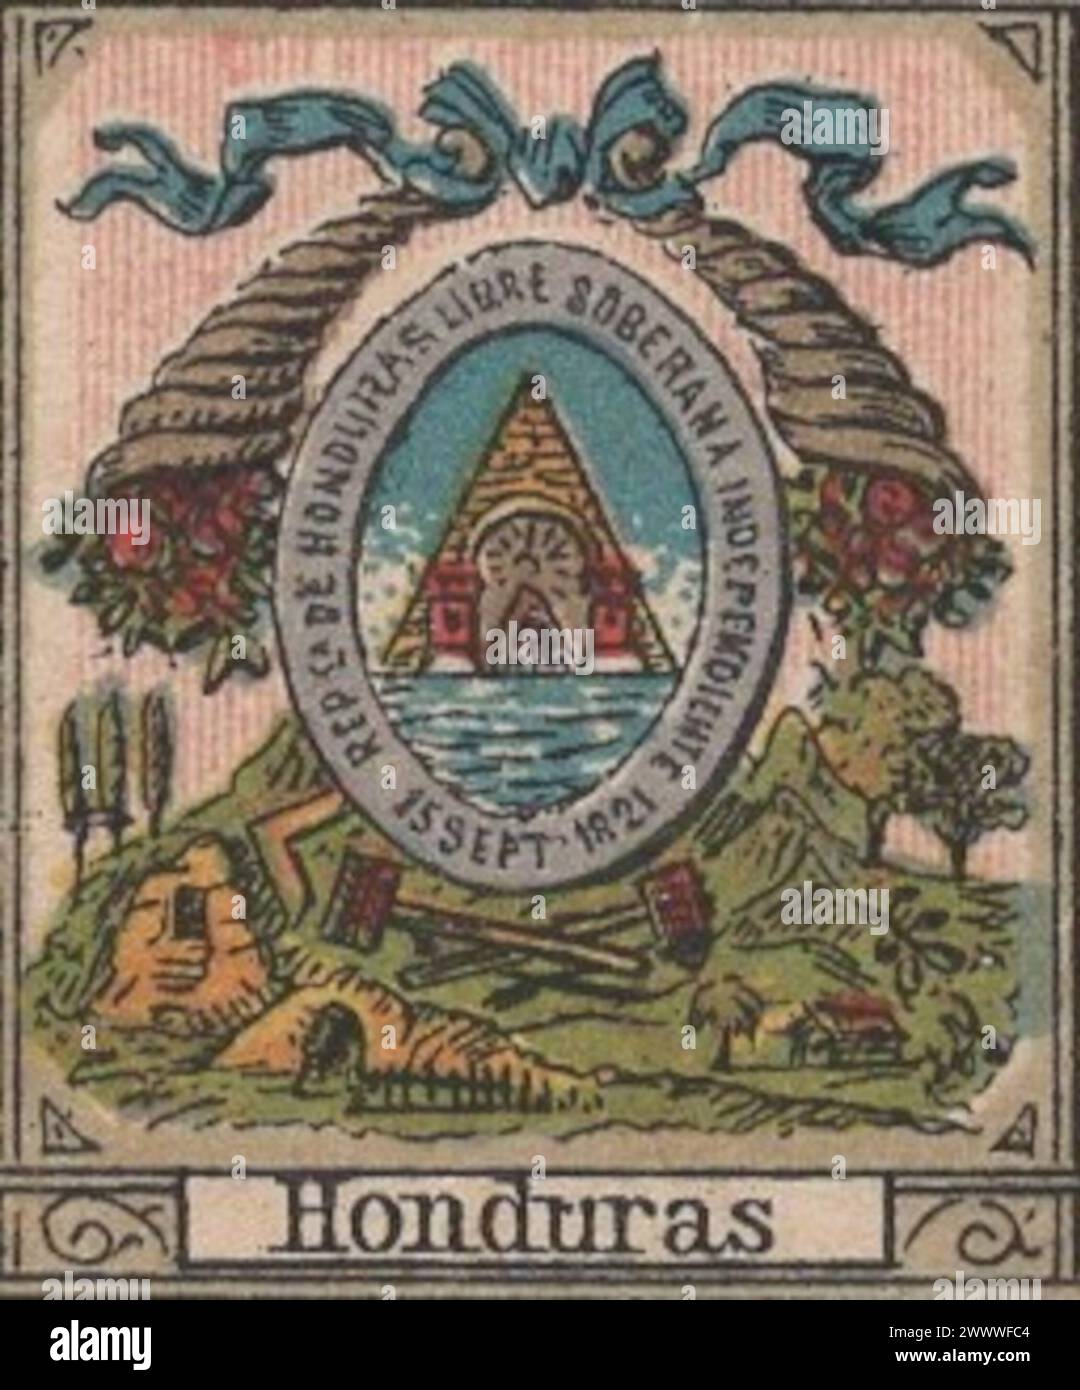 Rara pintura litográfica antigua de mediados del siglo XIX (1850s-1860s) sobre el escudo de armas de Honduras en idioma alemán / antike lithographie wappen von Honduras Foto de stock